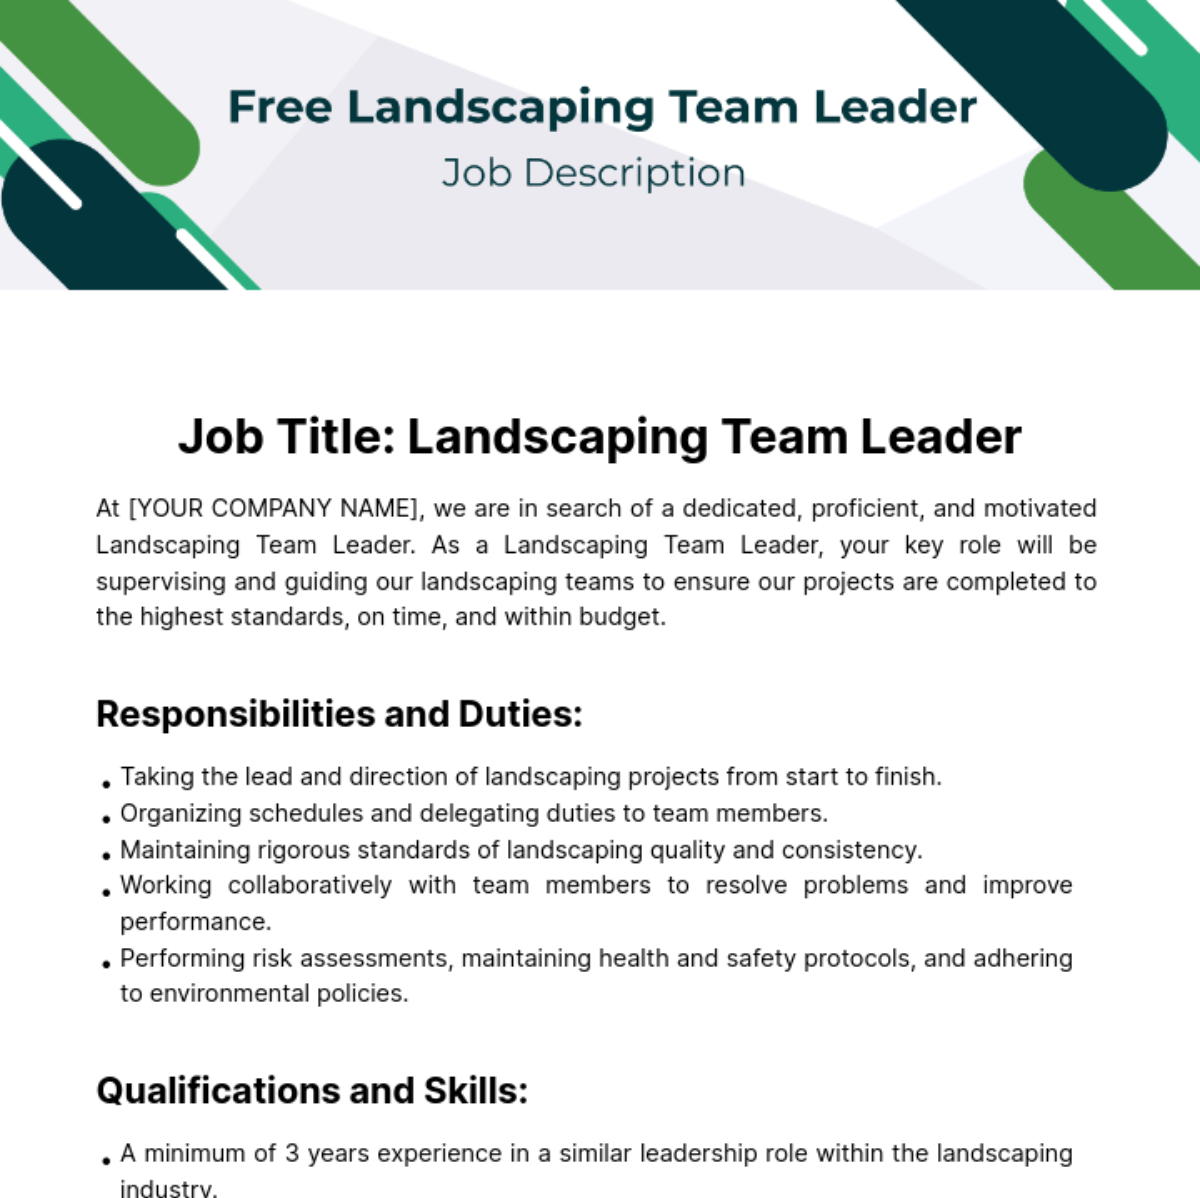 Free Landscaping Teal Leader Job Description Template